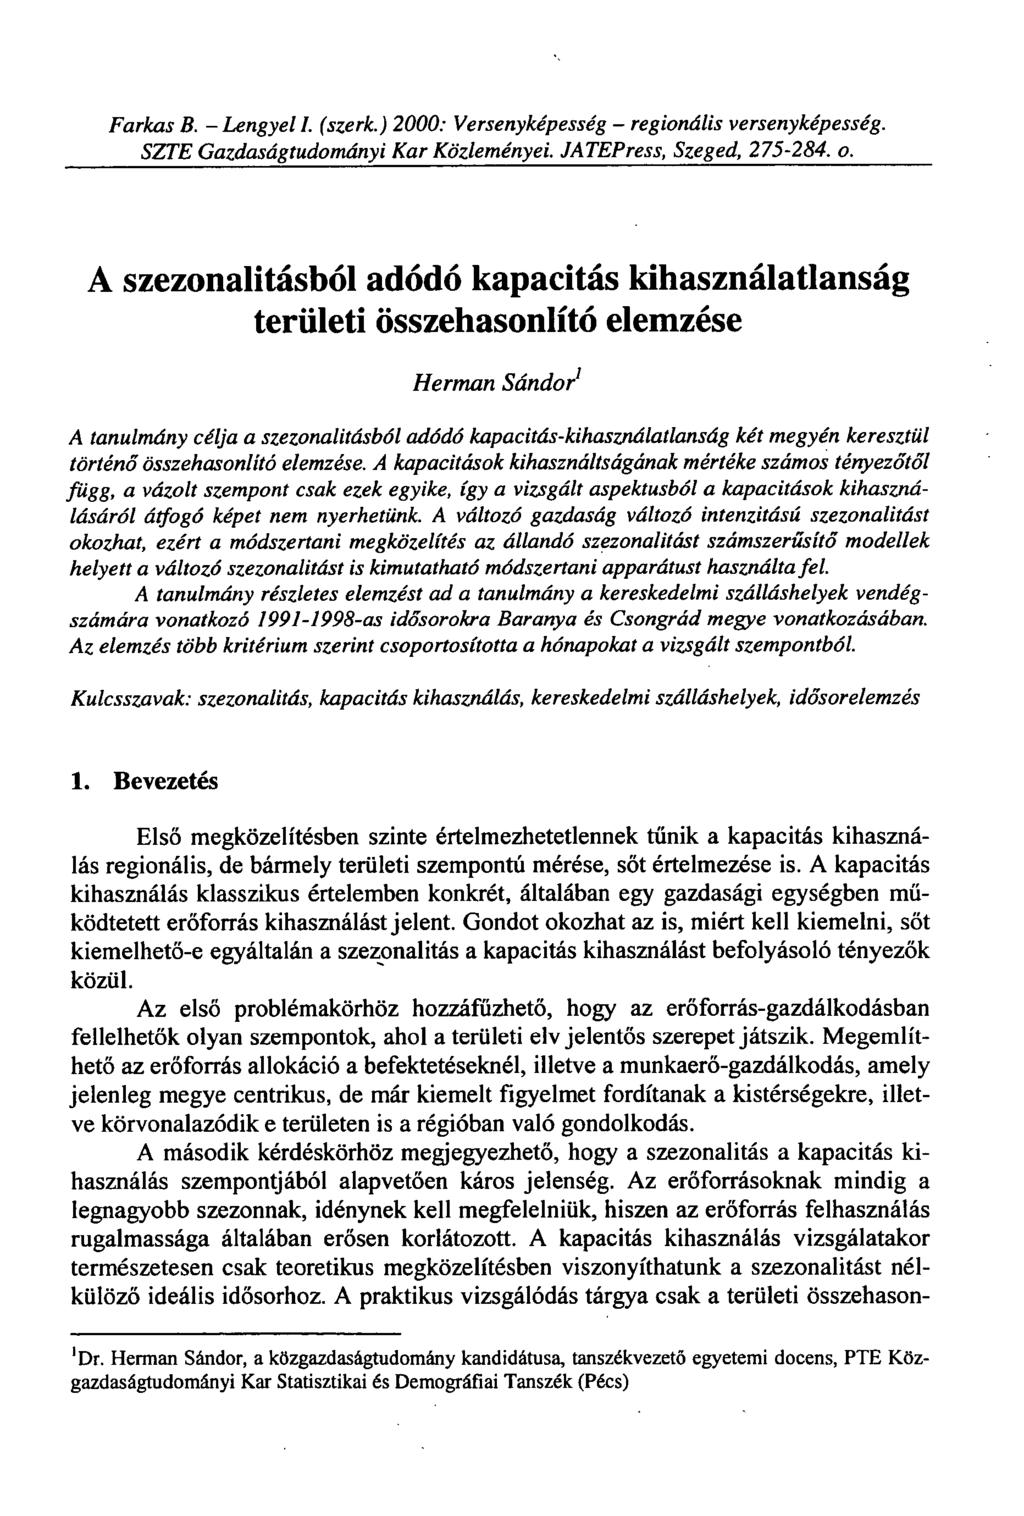 Farkas B. - Lengyel I. (szerk.) 2000: Versenyképesség - regionális versenyképesség. SZTE Gazdaságtudományi Kar Közleményei. JATEPress, Szeged, 275-202. o.